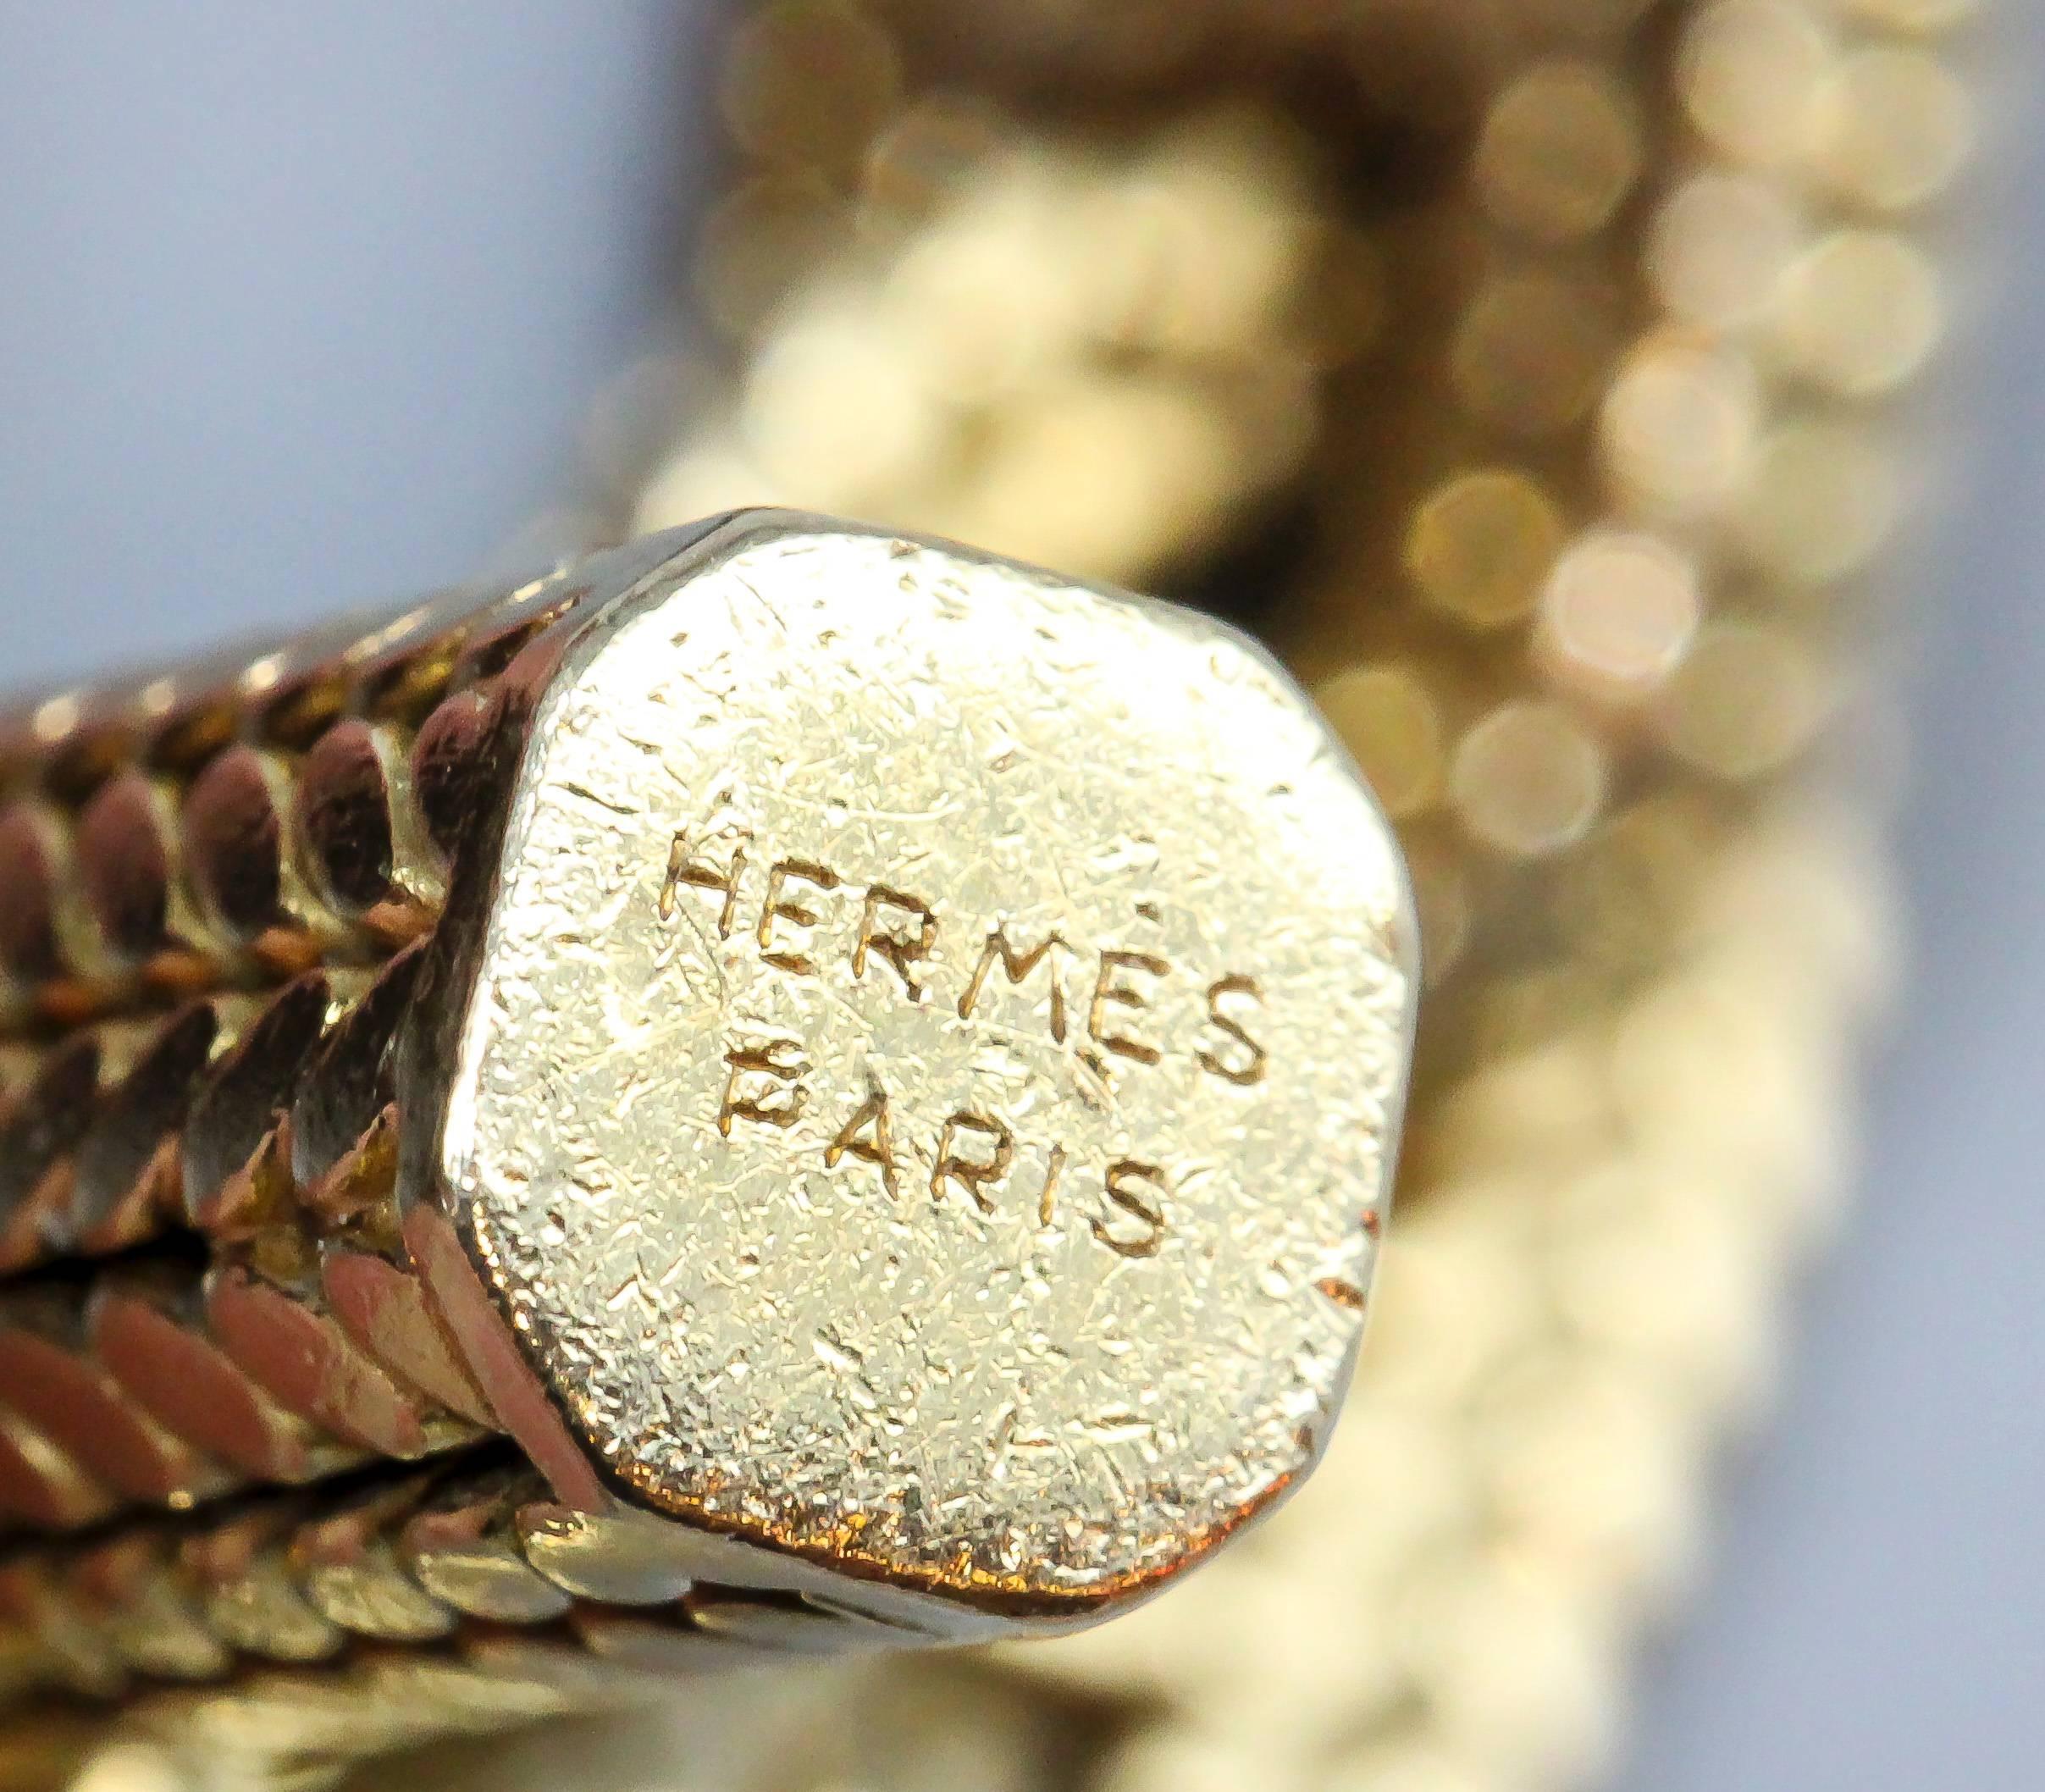 hermes link bracelet